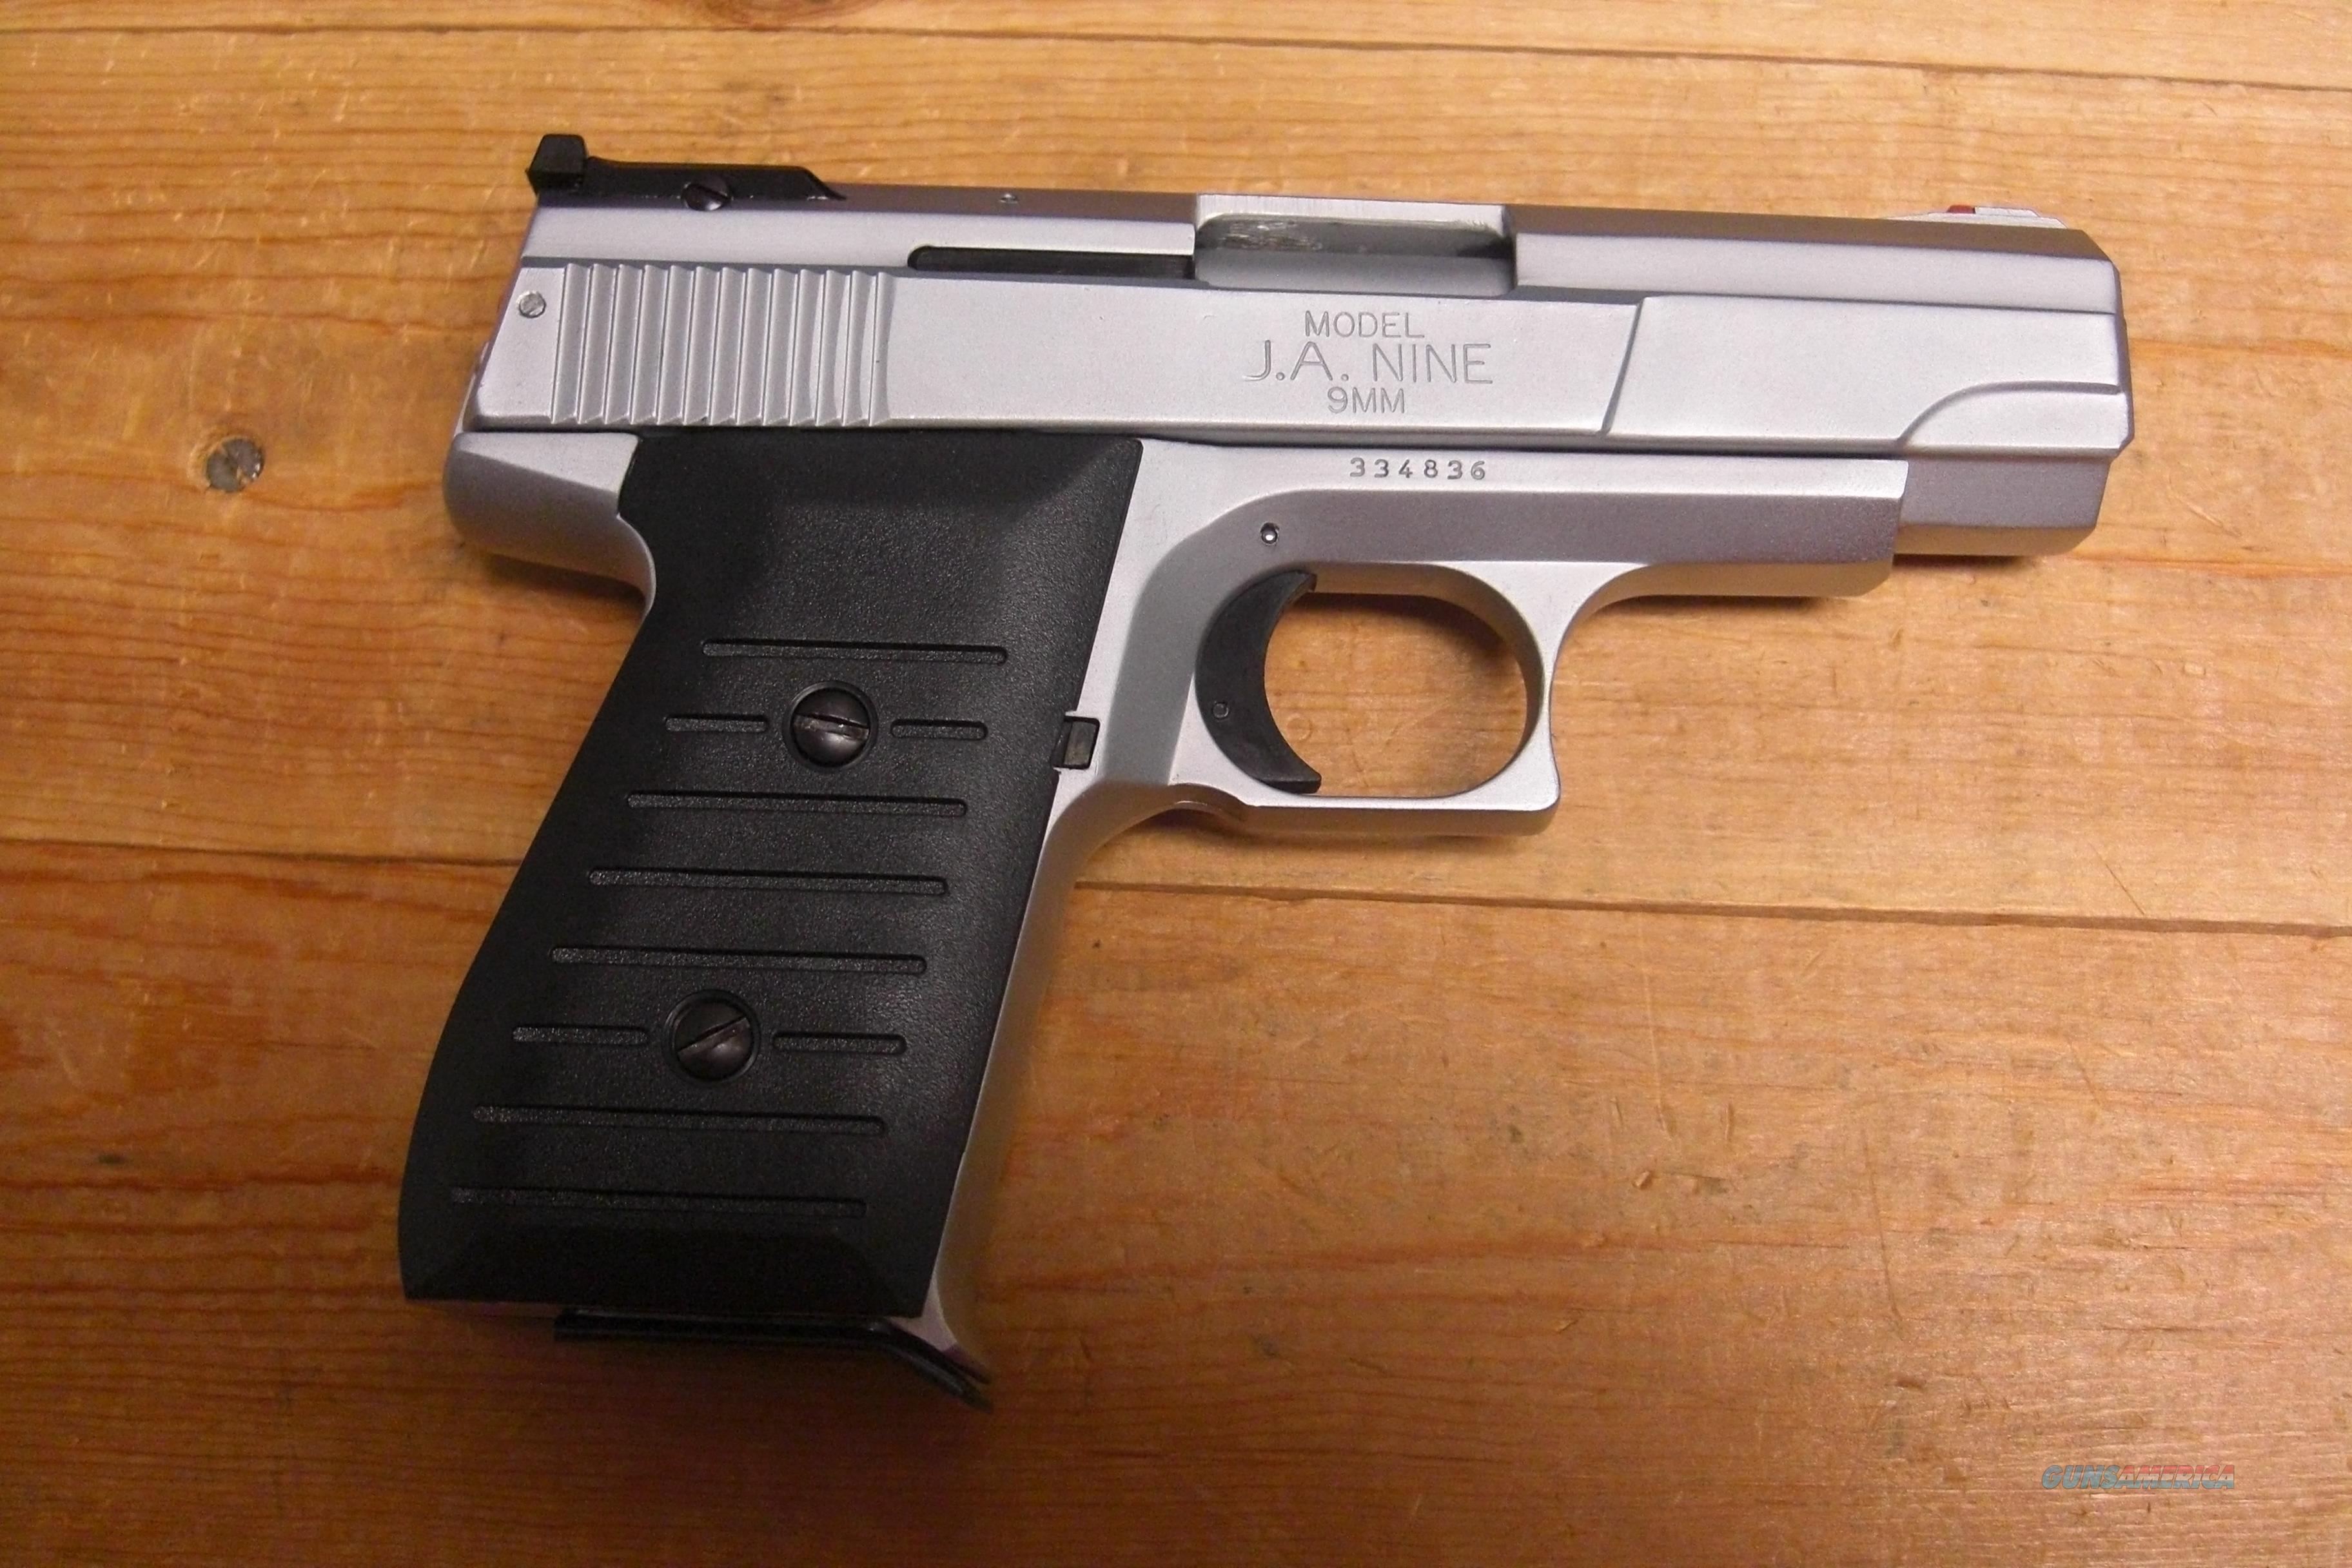 J.A. Nine Jimenez Arms pistol for sale